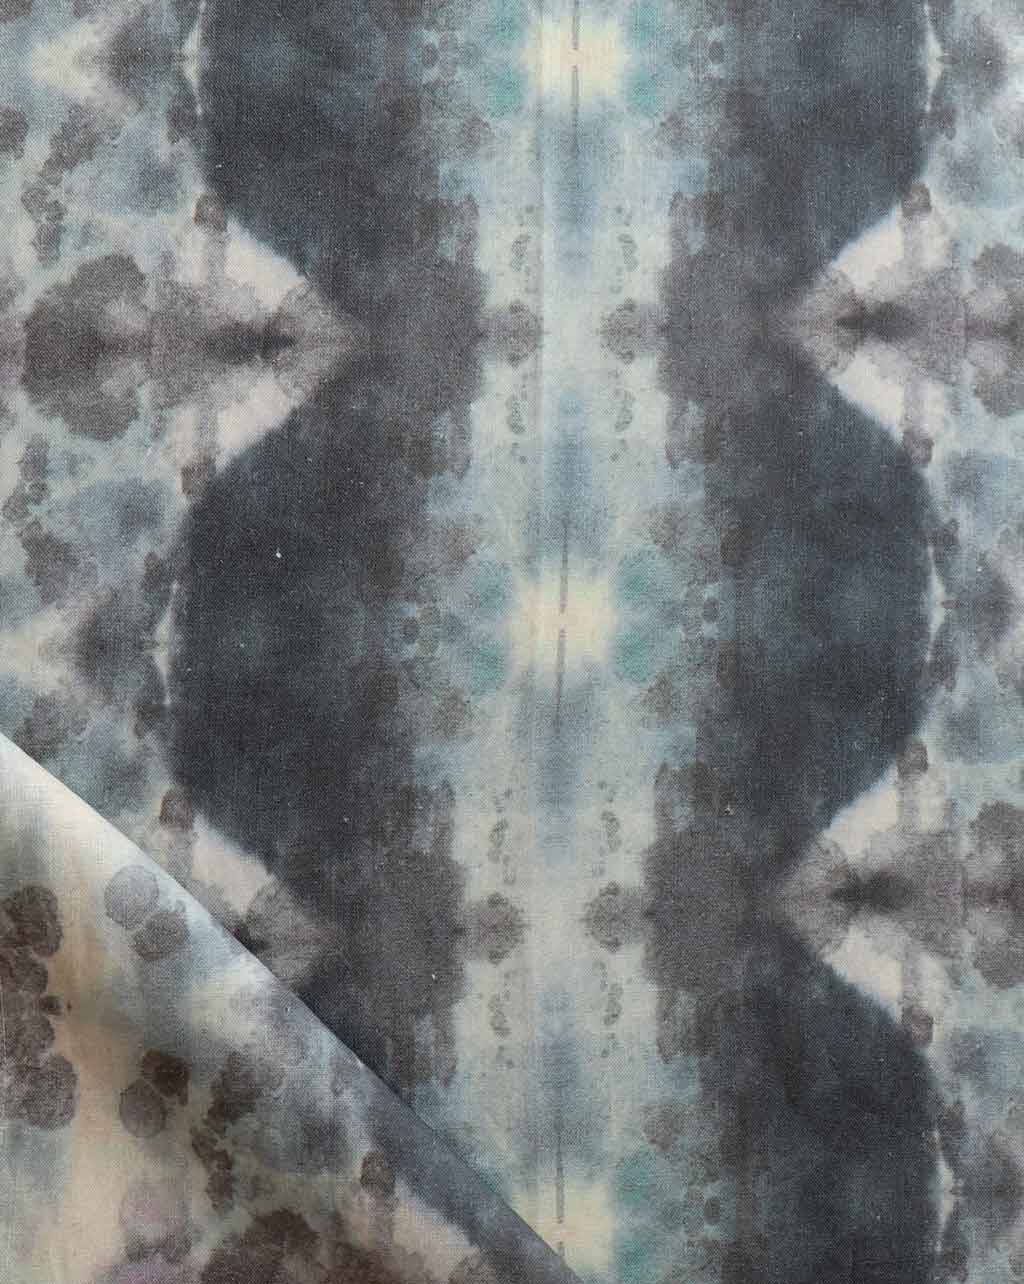 A close up of a Jangala Fabric pattern